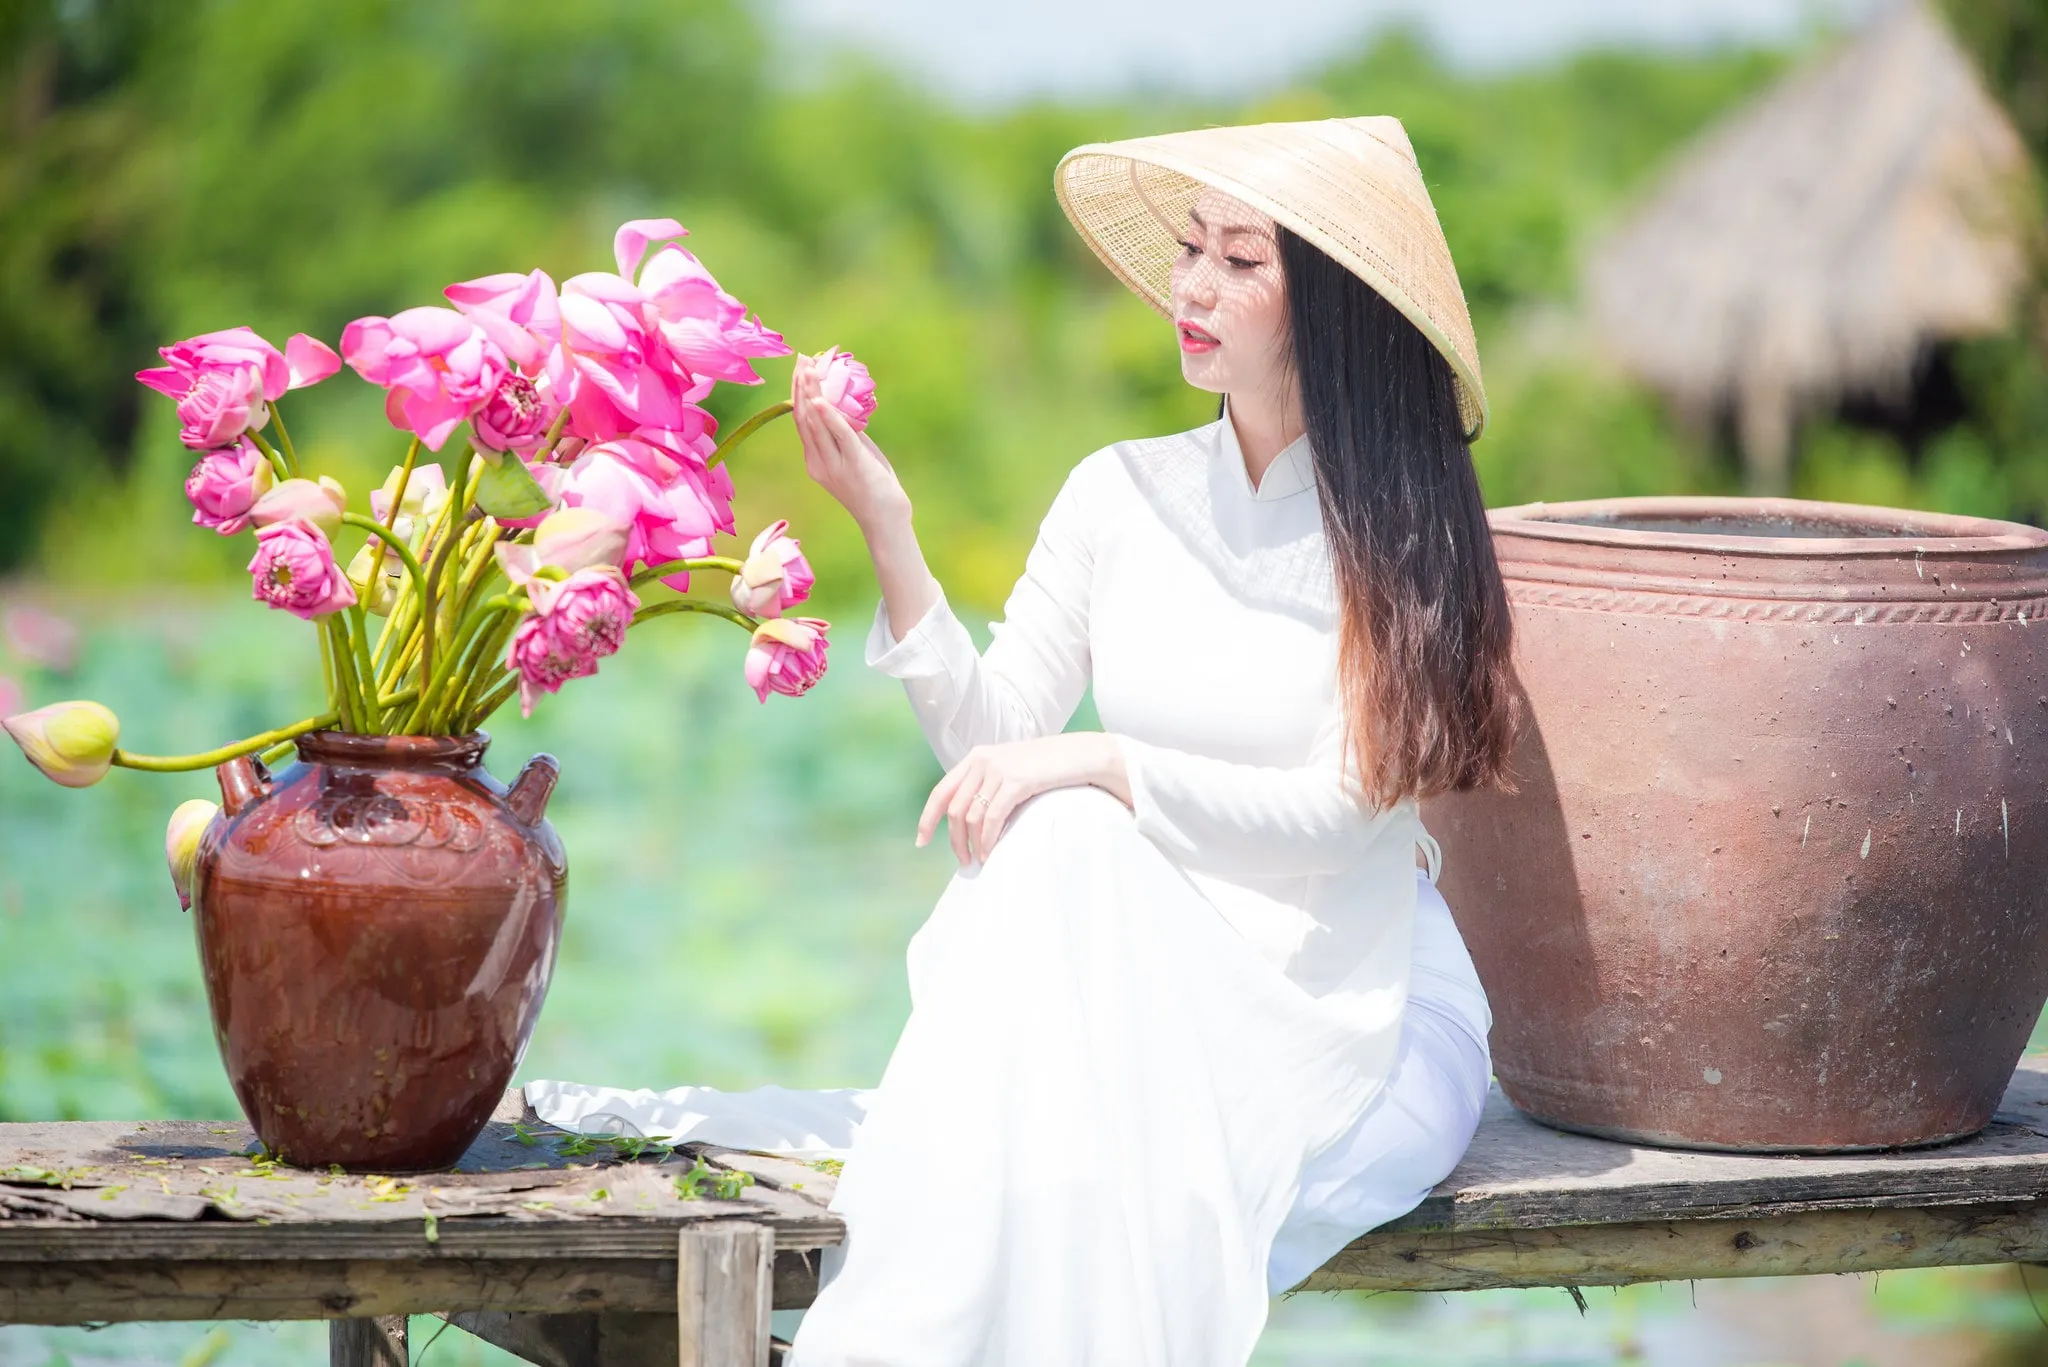 Chup hinh hoa sen 1 - 49 cách tạo dáng chụp ảnh với áo dài tuyệt đẹp - HThao Studio